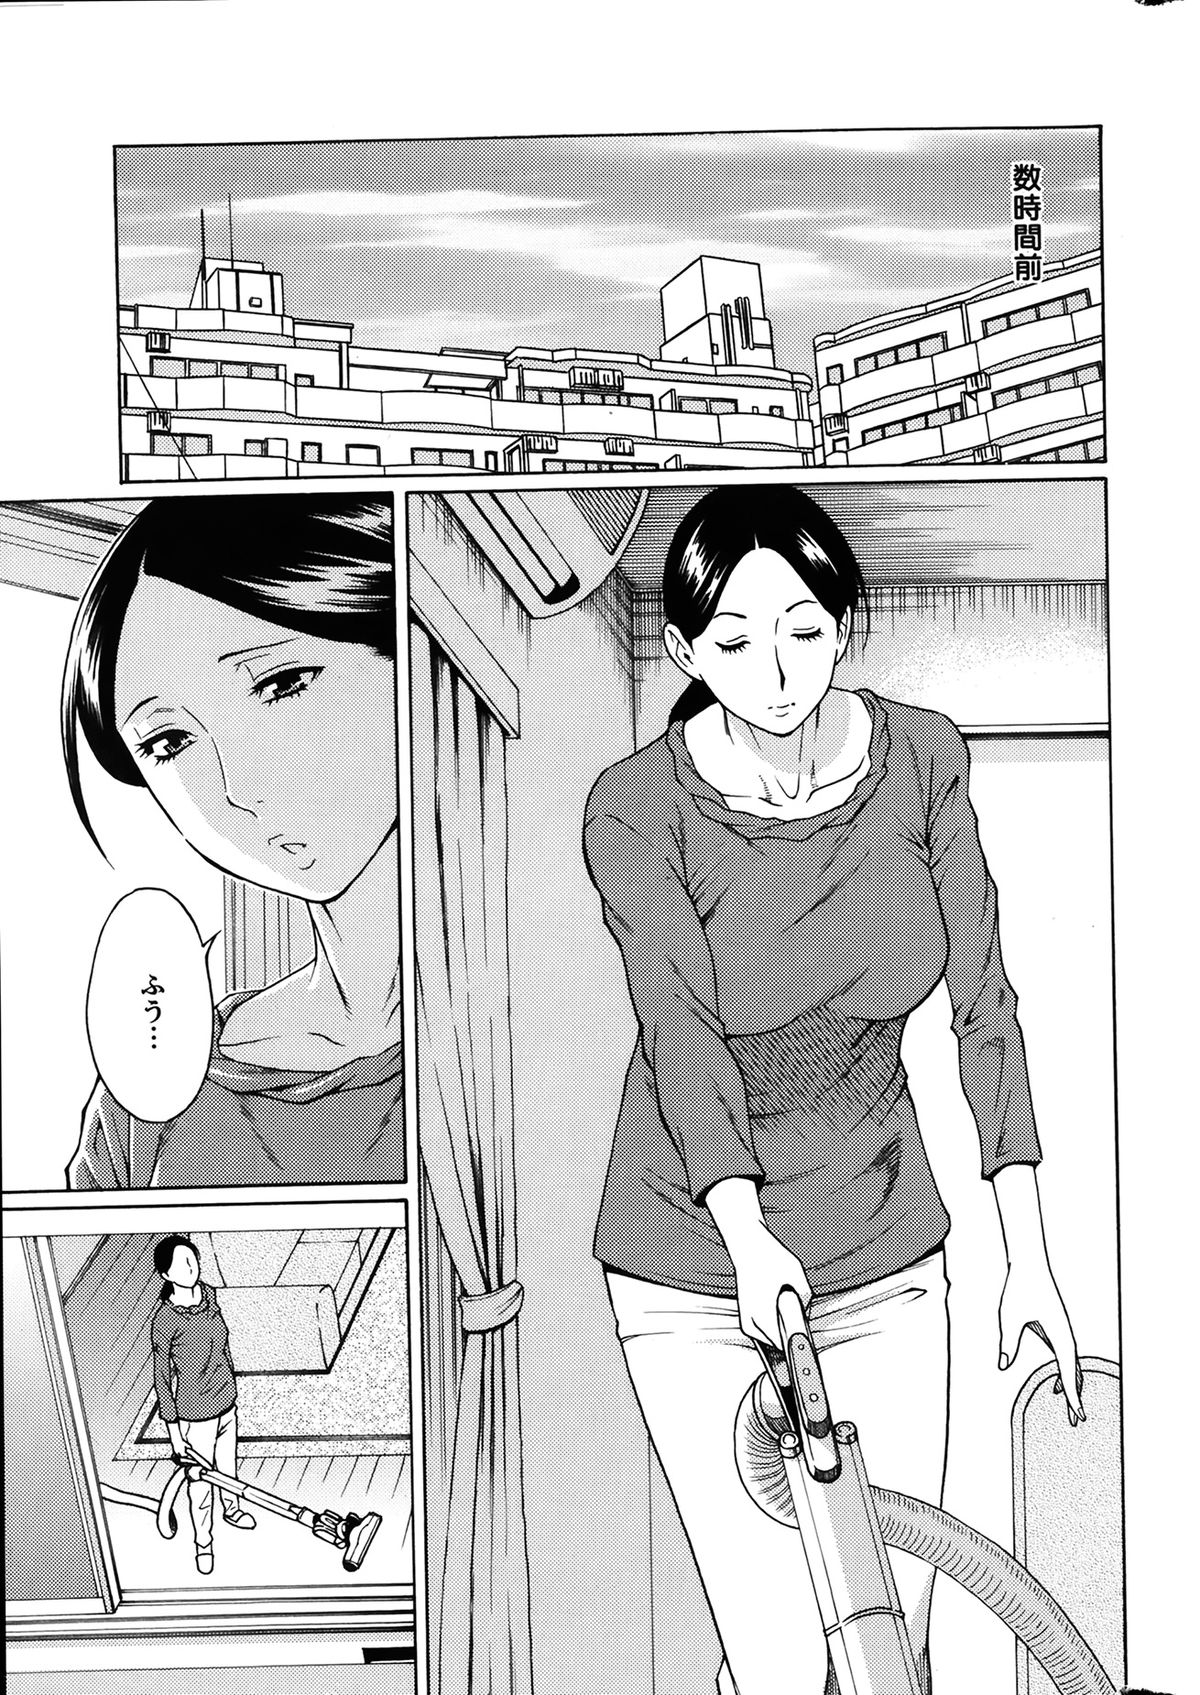 [Takasugi Kou] Madam Palace Ch.1-4 page 5 full